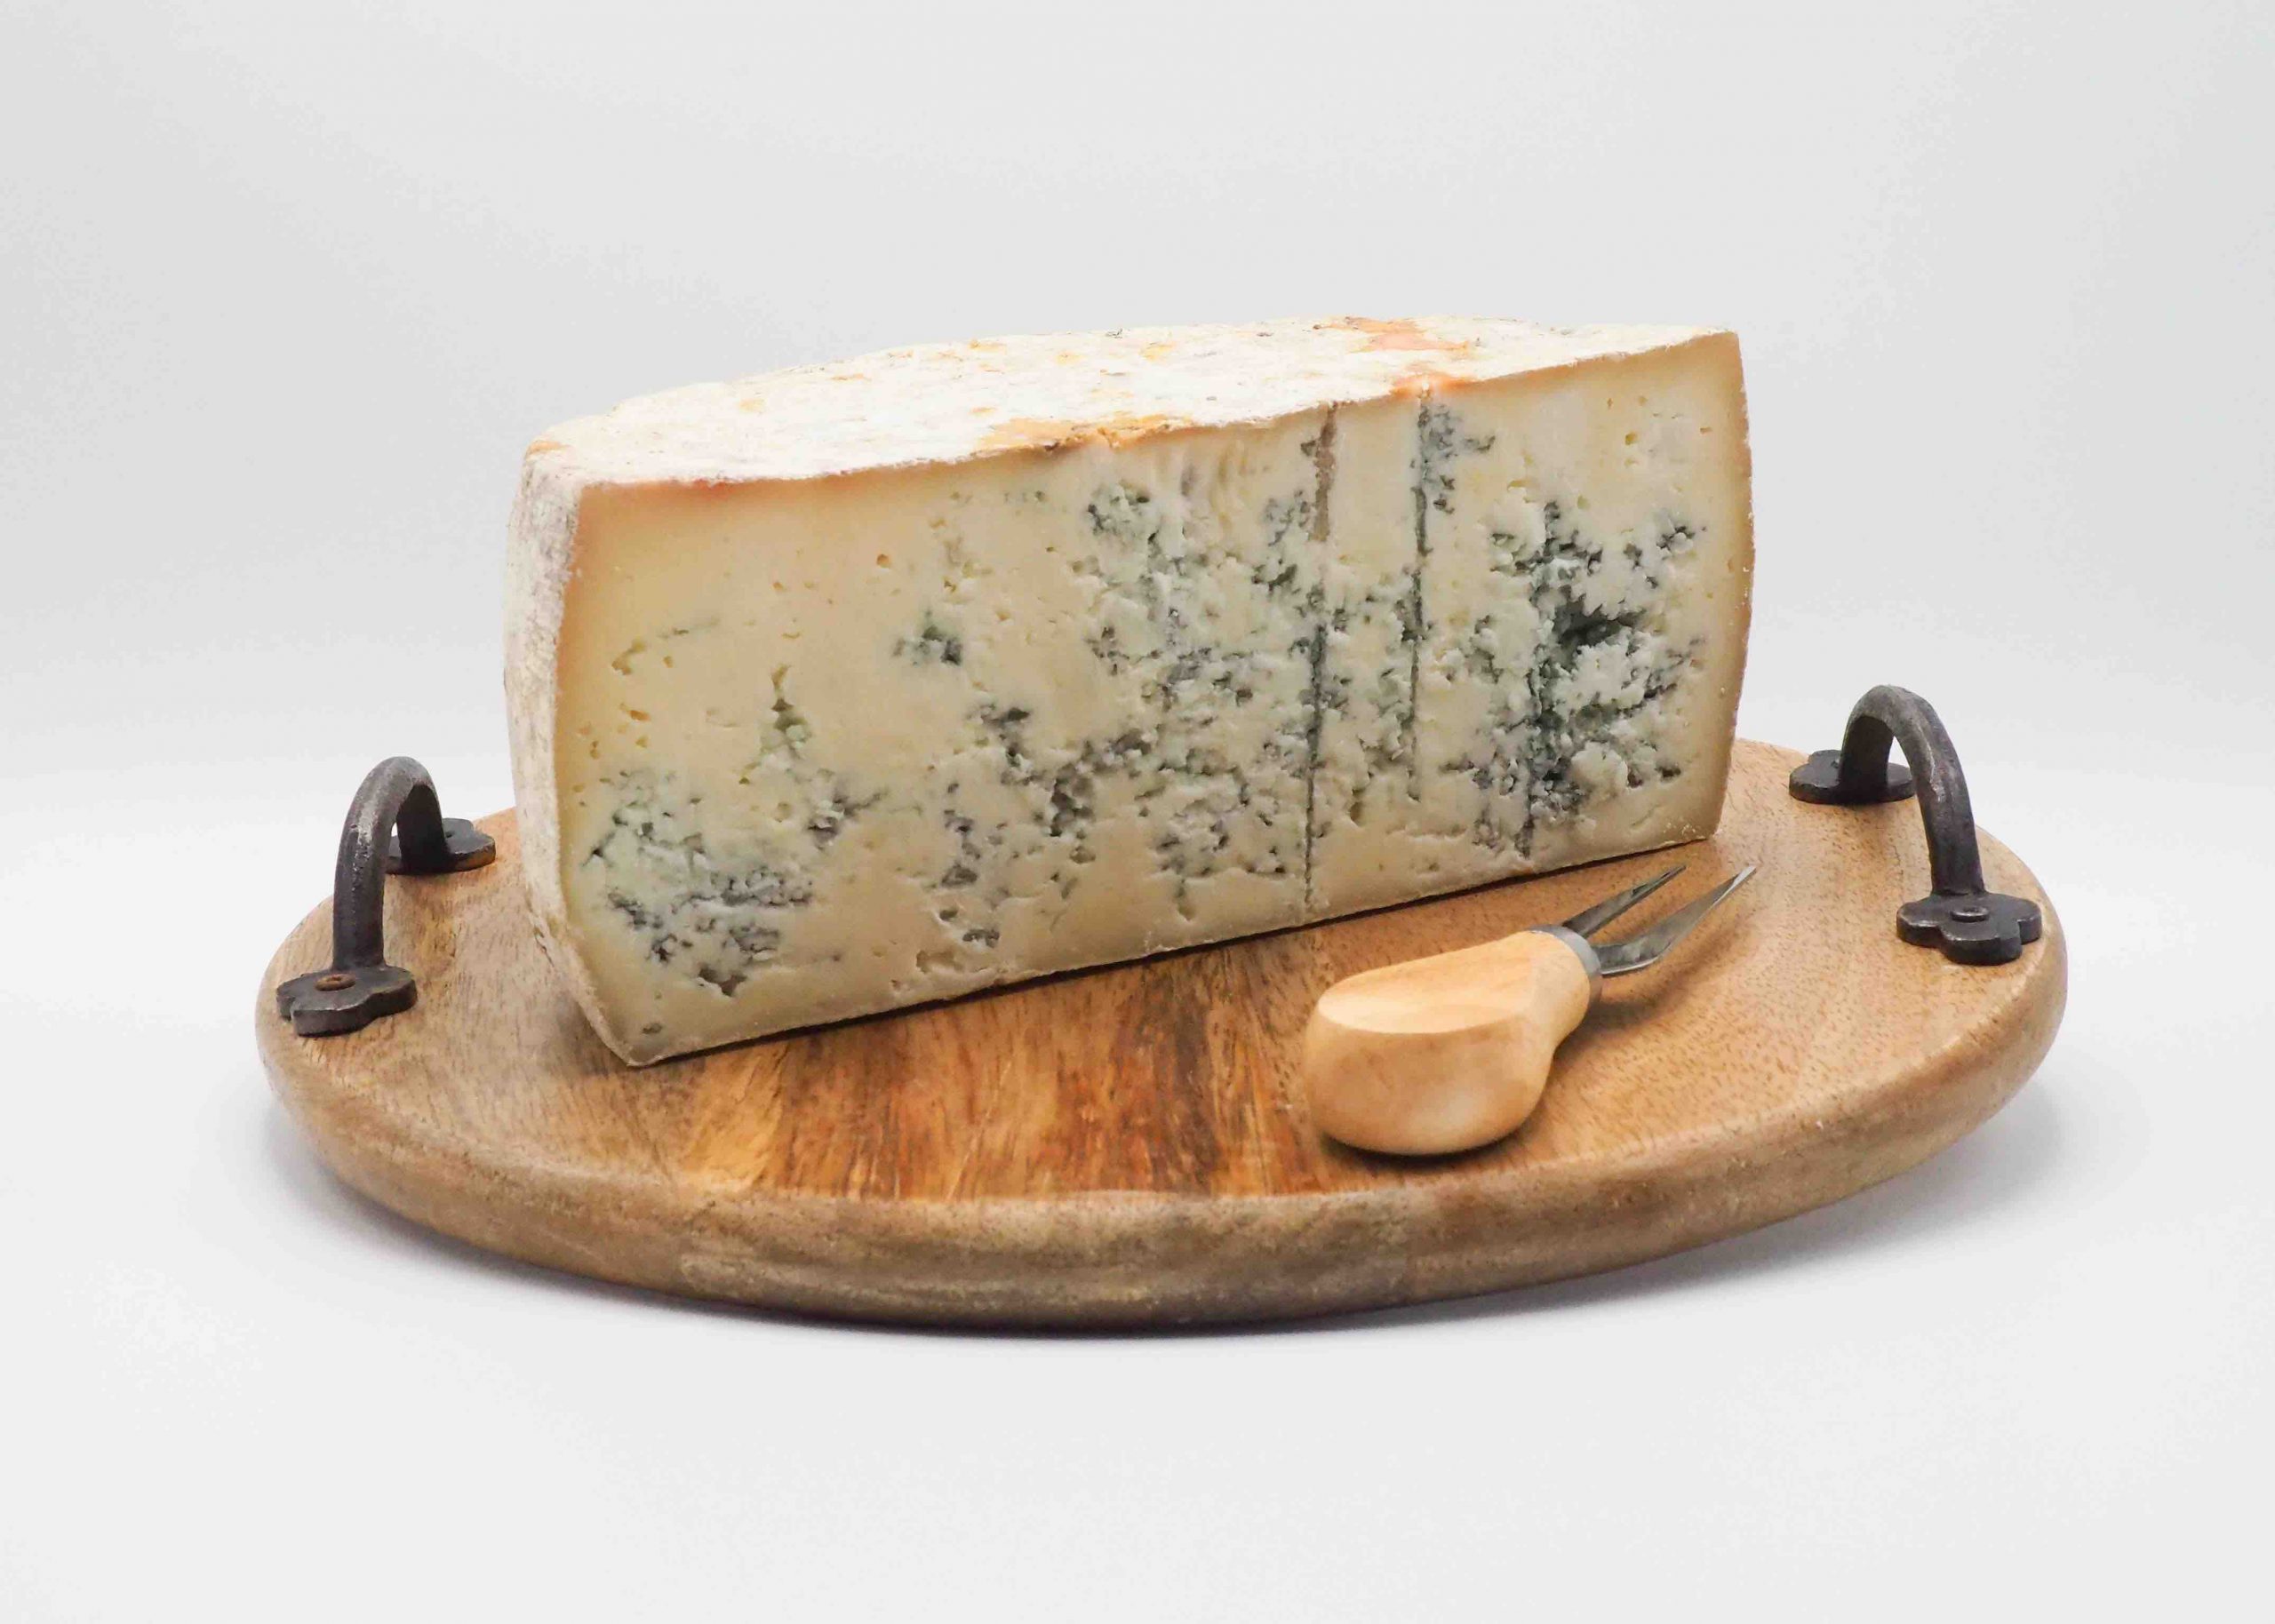 Vente fromage Berger Bleu en ligne avec livraison à domicile